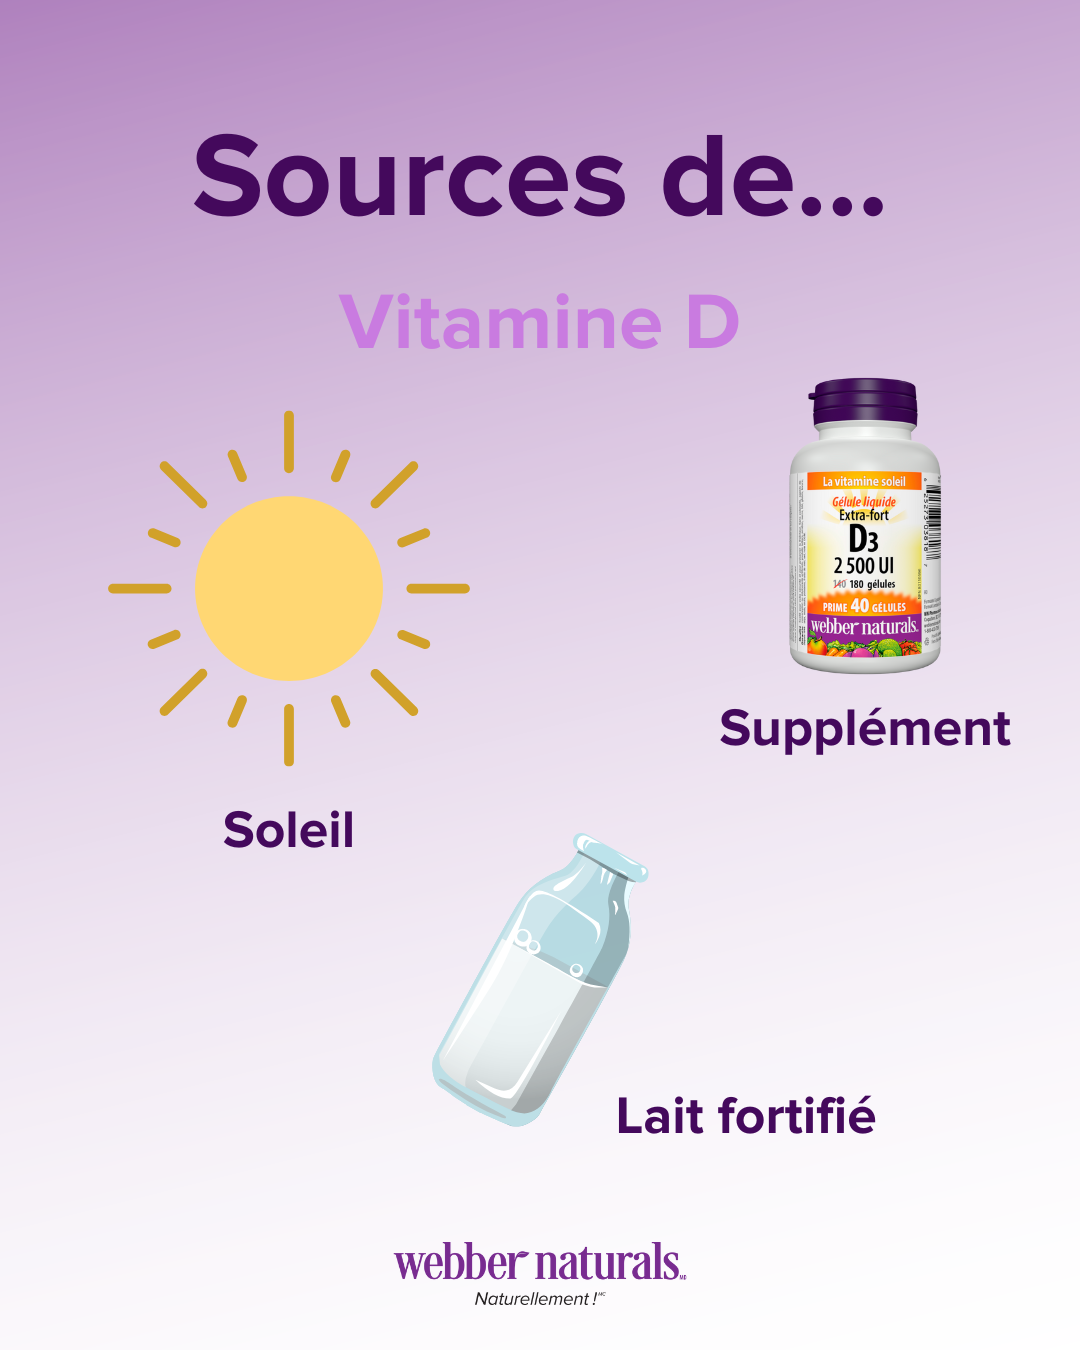 Sources de Vitamine D